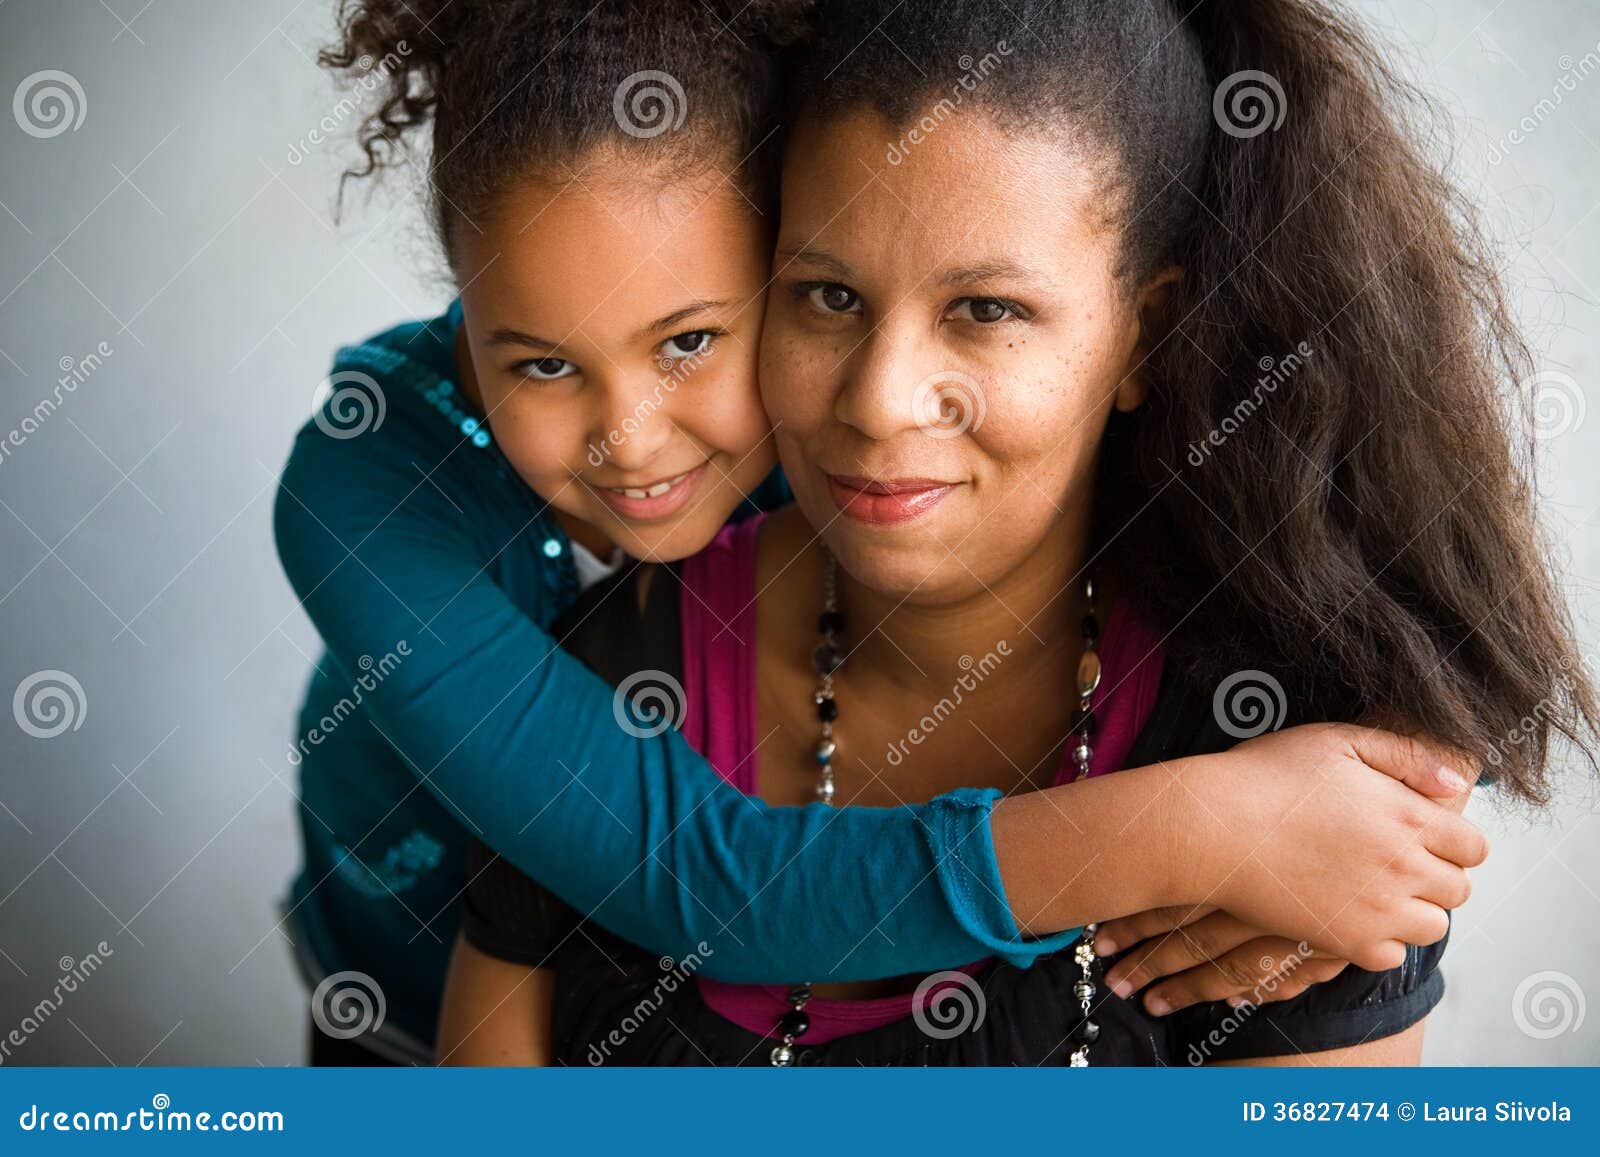 mom and daughter hug